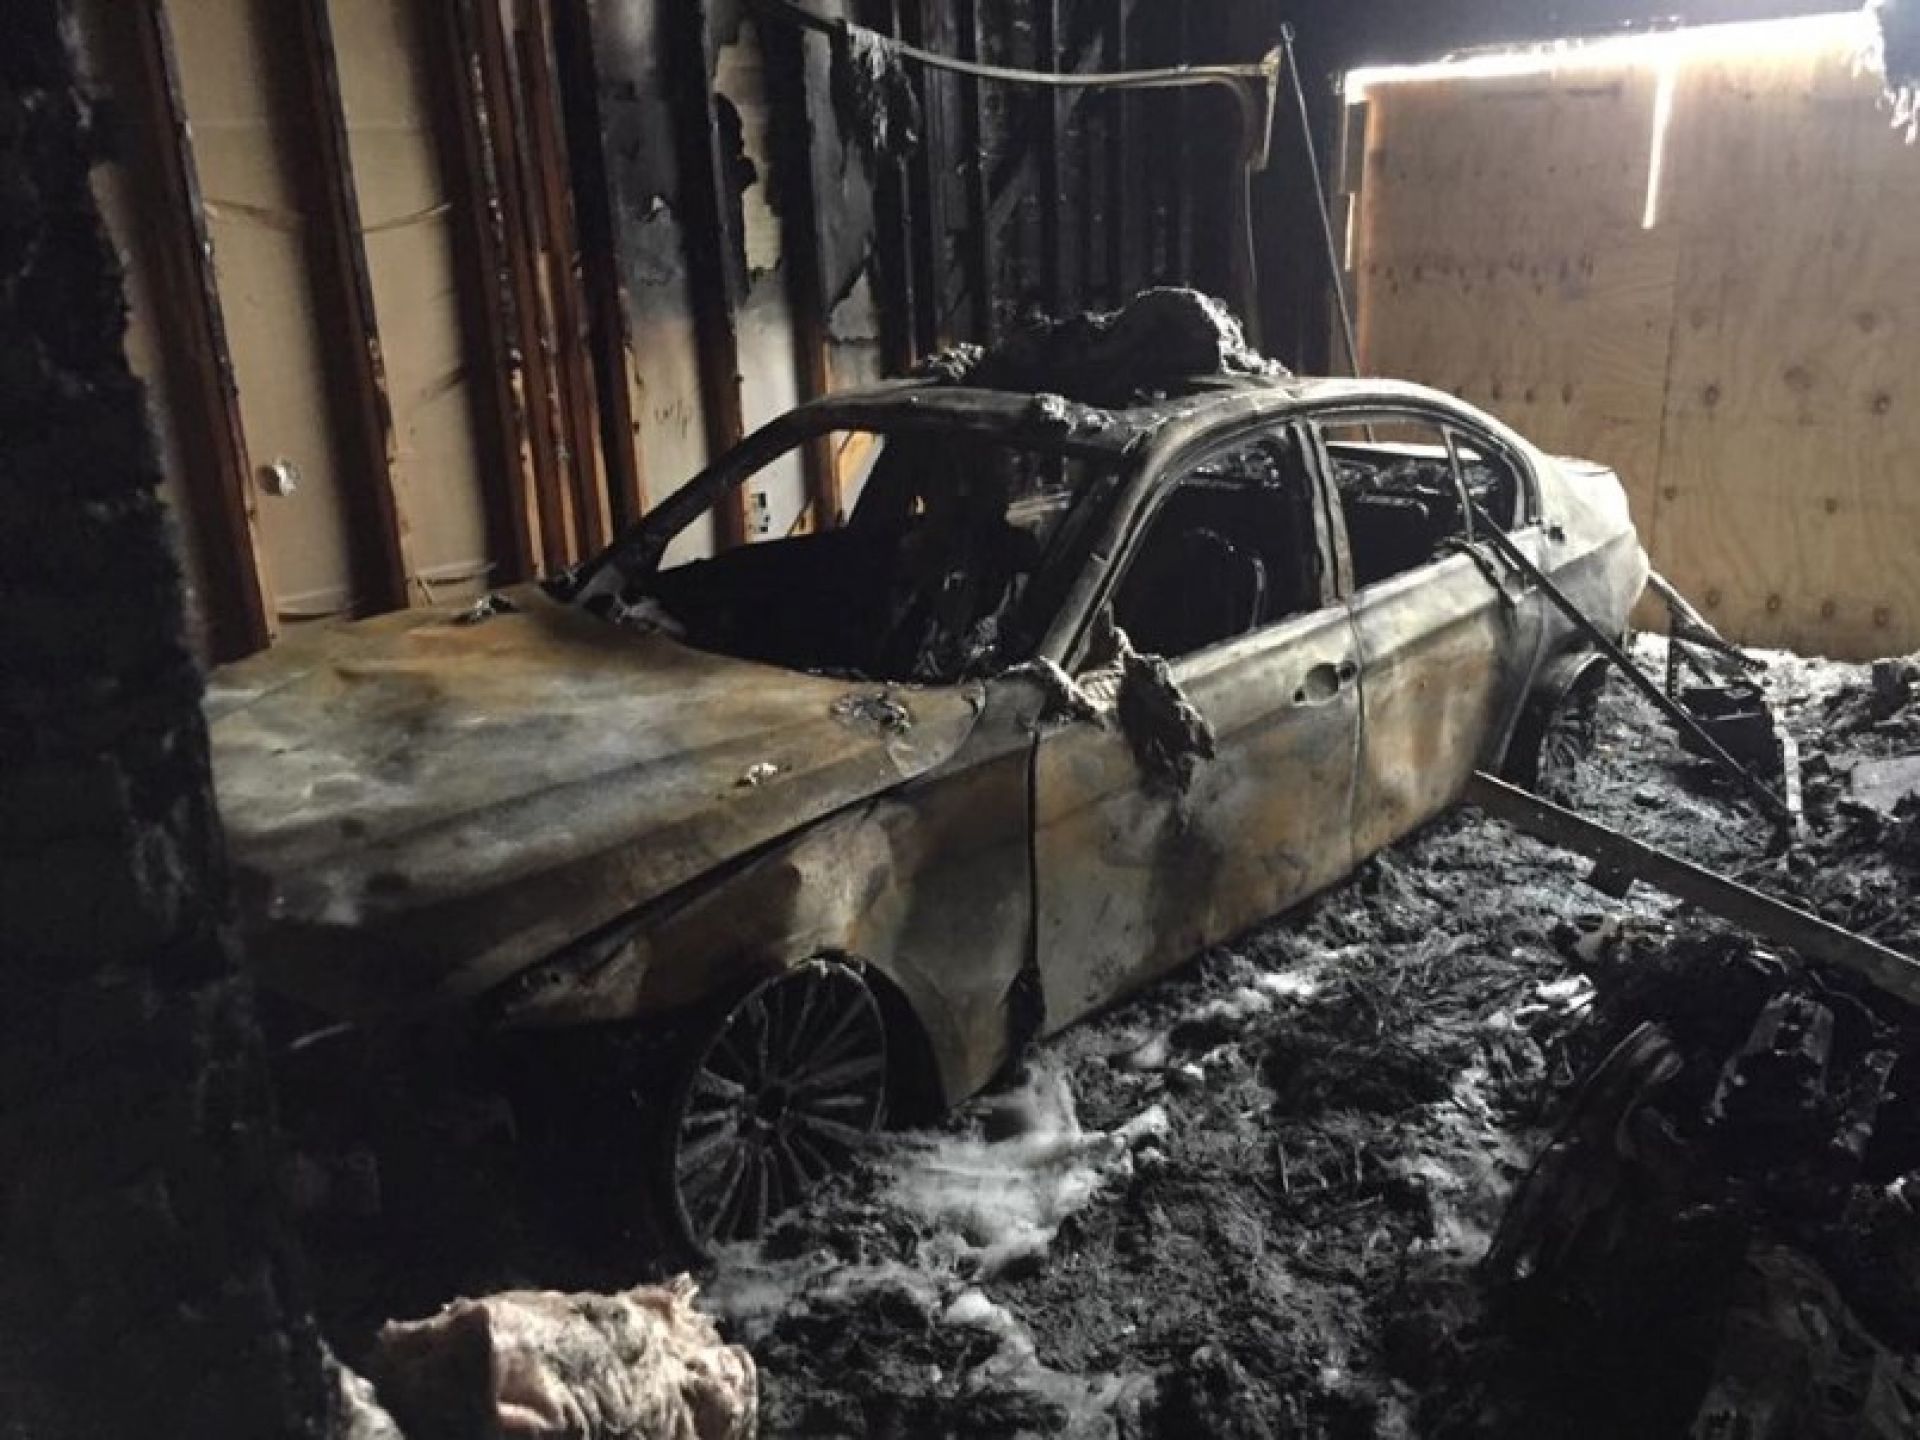 Автомобиль после пожара